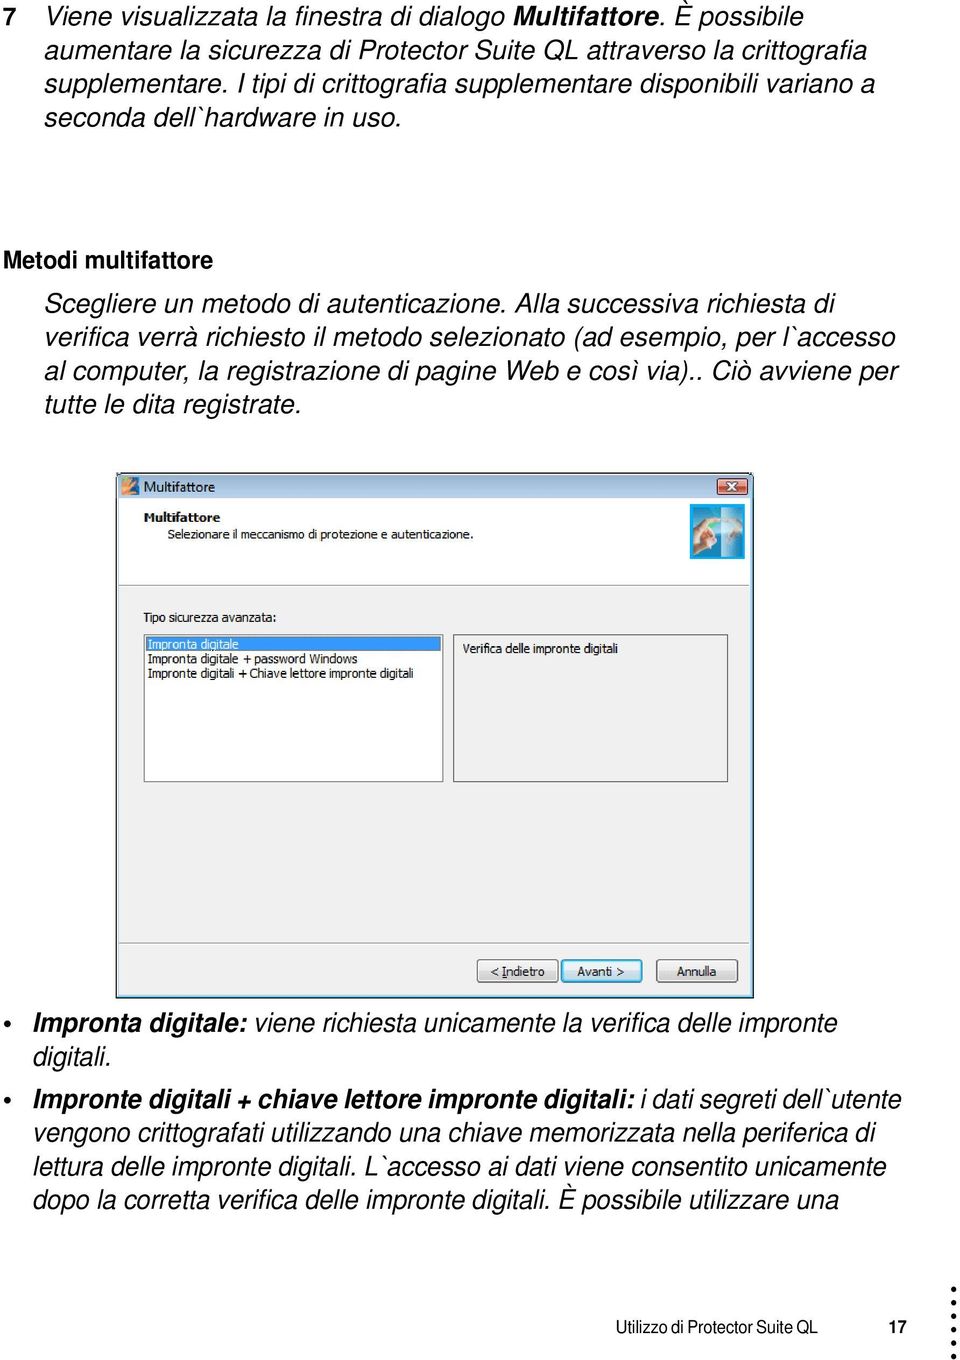 Alla successiva richiesta di verifica verrà richiesto il metodo selezionato (ad esempio, per l`accesso al computer, la registrazione di pagine Web e così via).